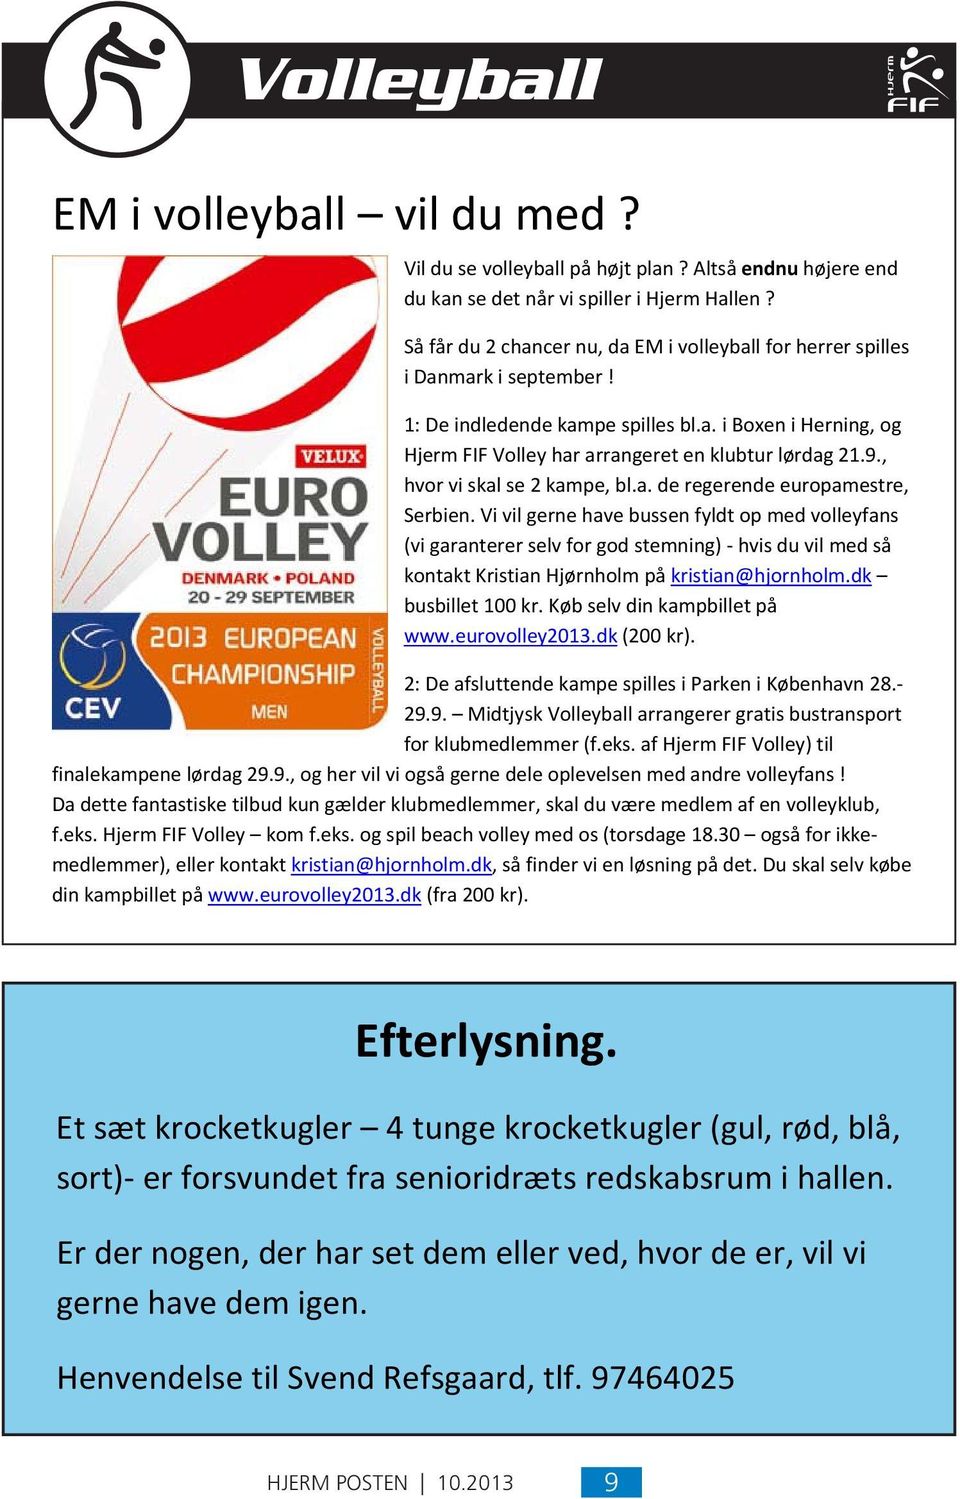 Så får du 2 chancer nu, da EM i volleyball for herrer spilles 1: i Danmark De indledende i september kampe! spilles bl.a. i Boxen i Herning, og Hjerm FIF Volley har arrangeret en klubtur lørdag 21.9.